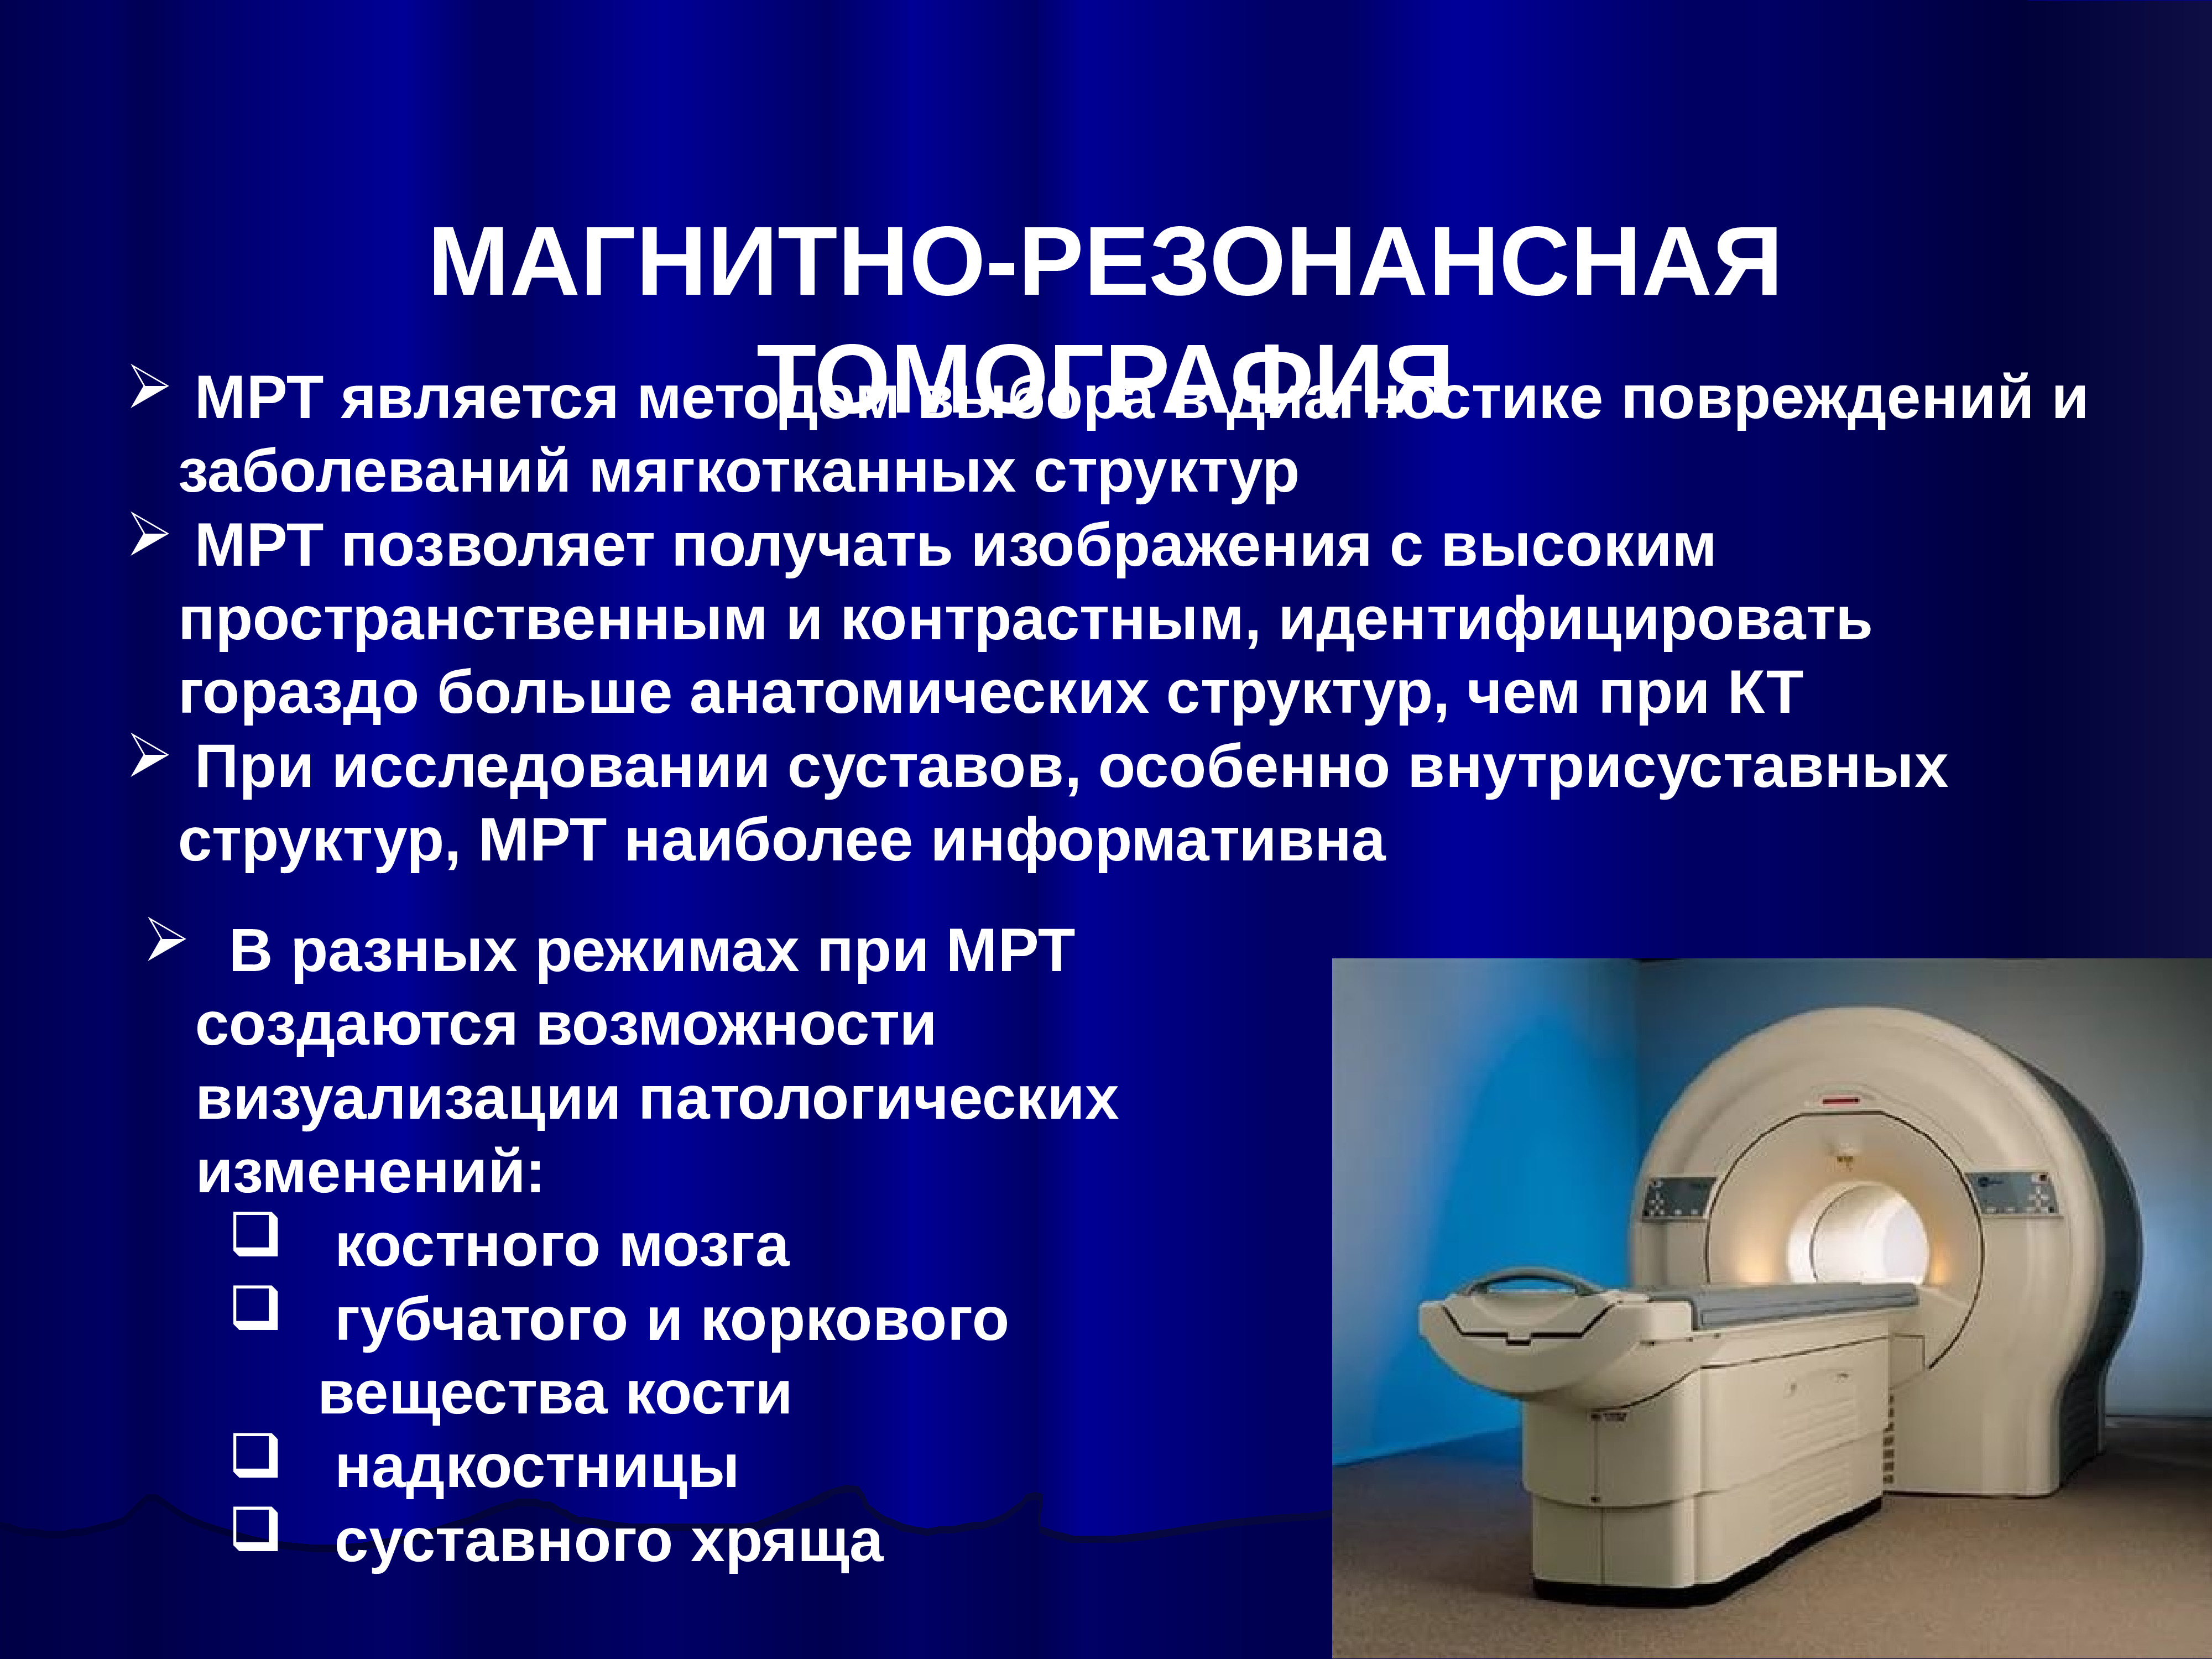 Мрт какие диагнозы. Магнитно-резонансная томография метод исследования. Мрт методы исследования. Магнитно-резонансная томография (мрт). Магнитно-резонансный томограф.